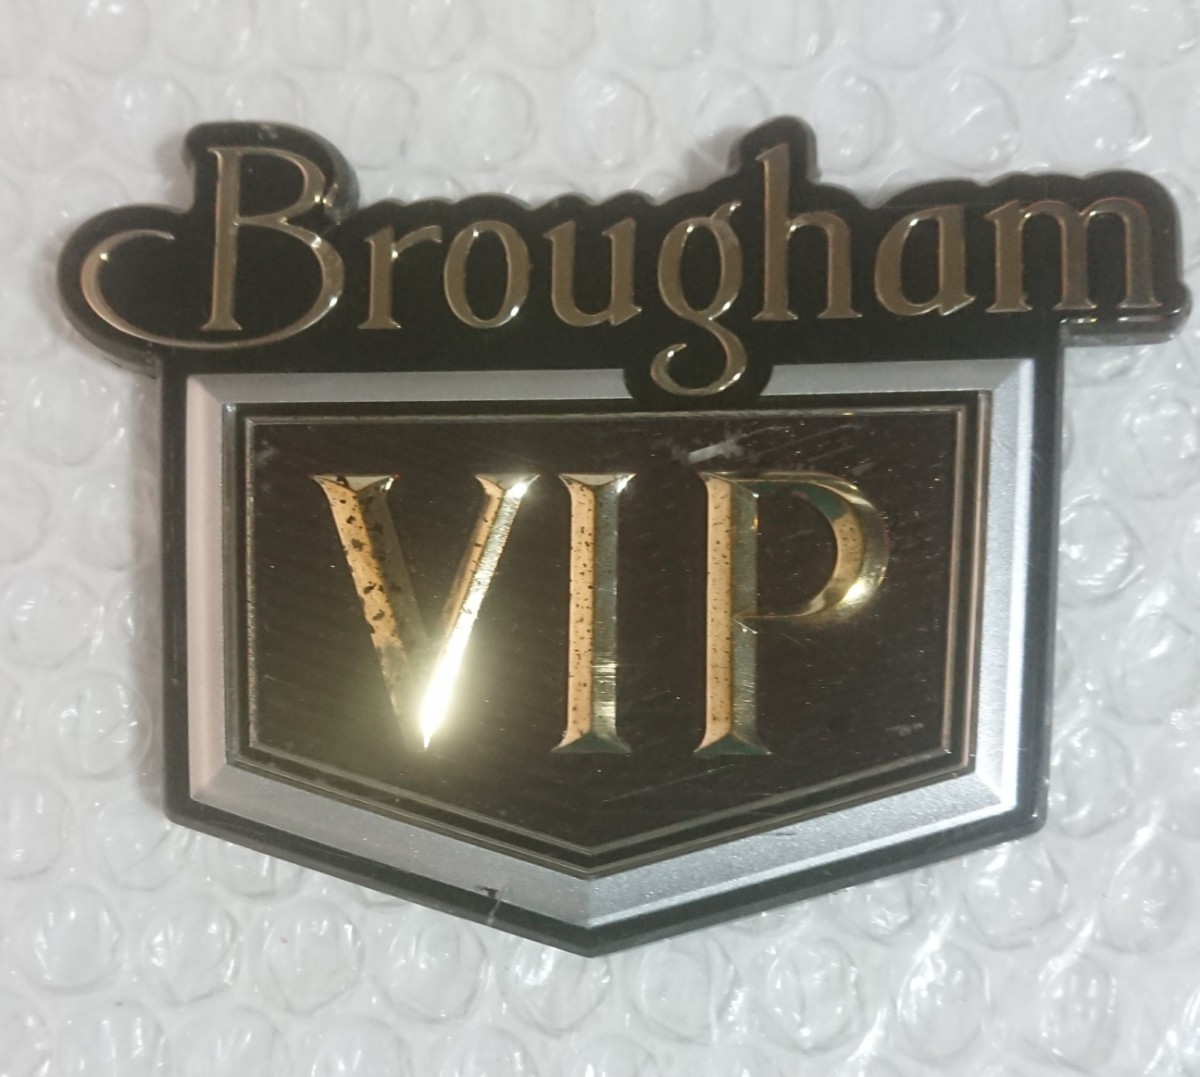 Y30 日産 セドリック グロリア Brougham VIP エンブレム-